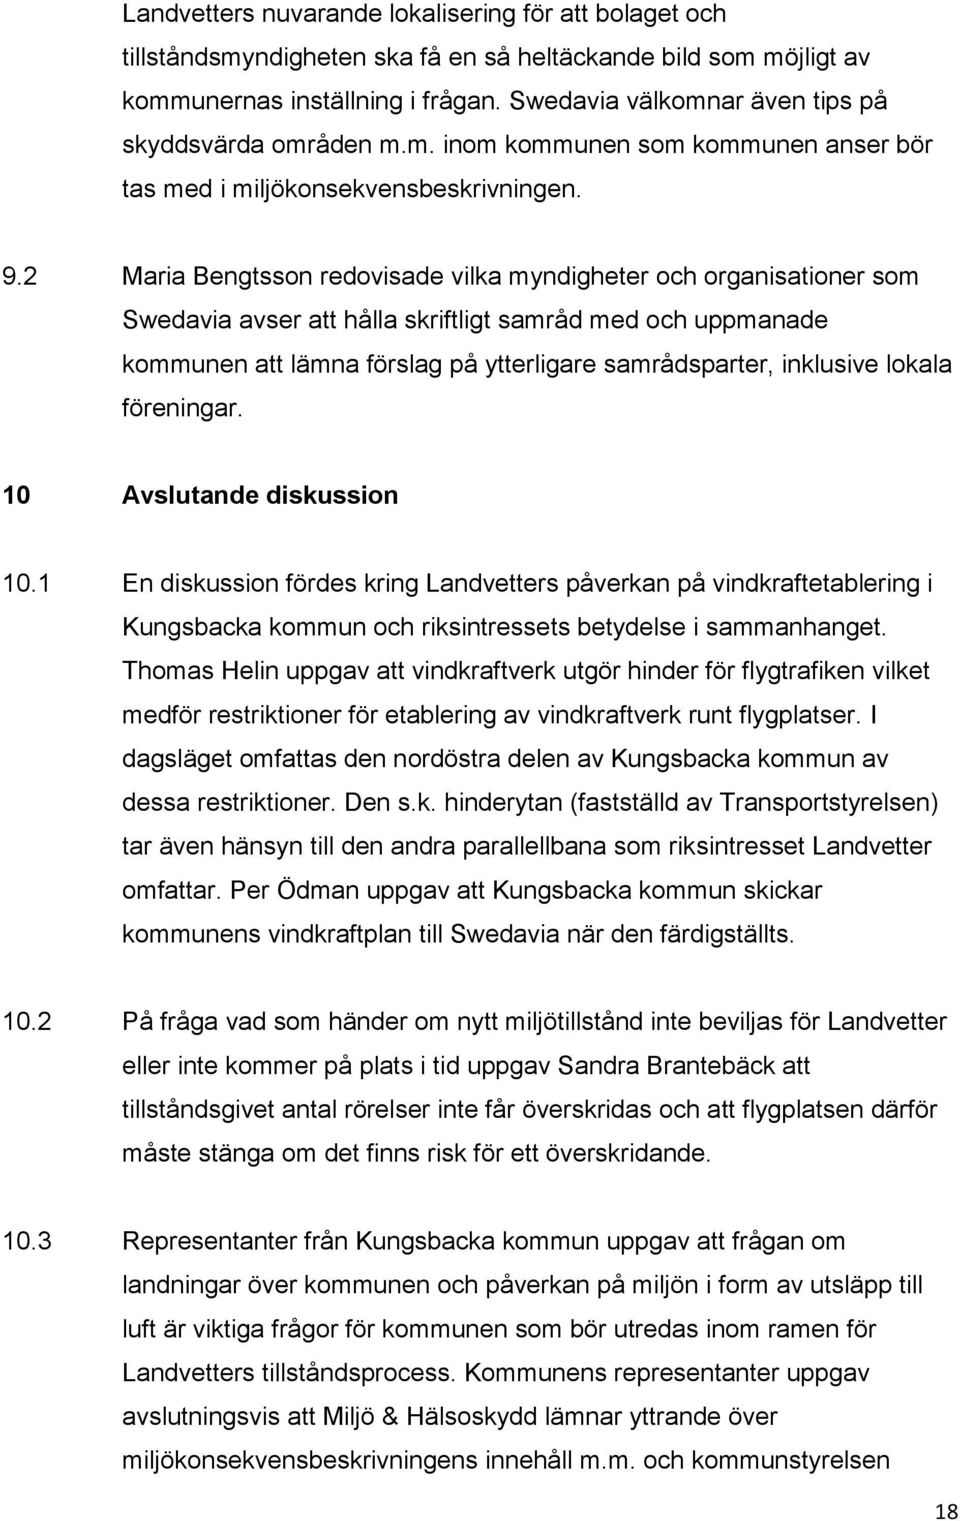 2 Maria Bengtsson redovisade vilka myndigheter och organisationer som Swedavia avser att hålla skriftligt samråd med och uppmanade kommunen att lämna förslag på ytterligare samrådsparter, inklusive